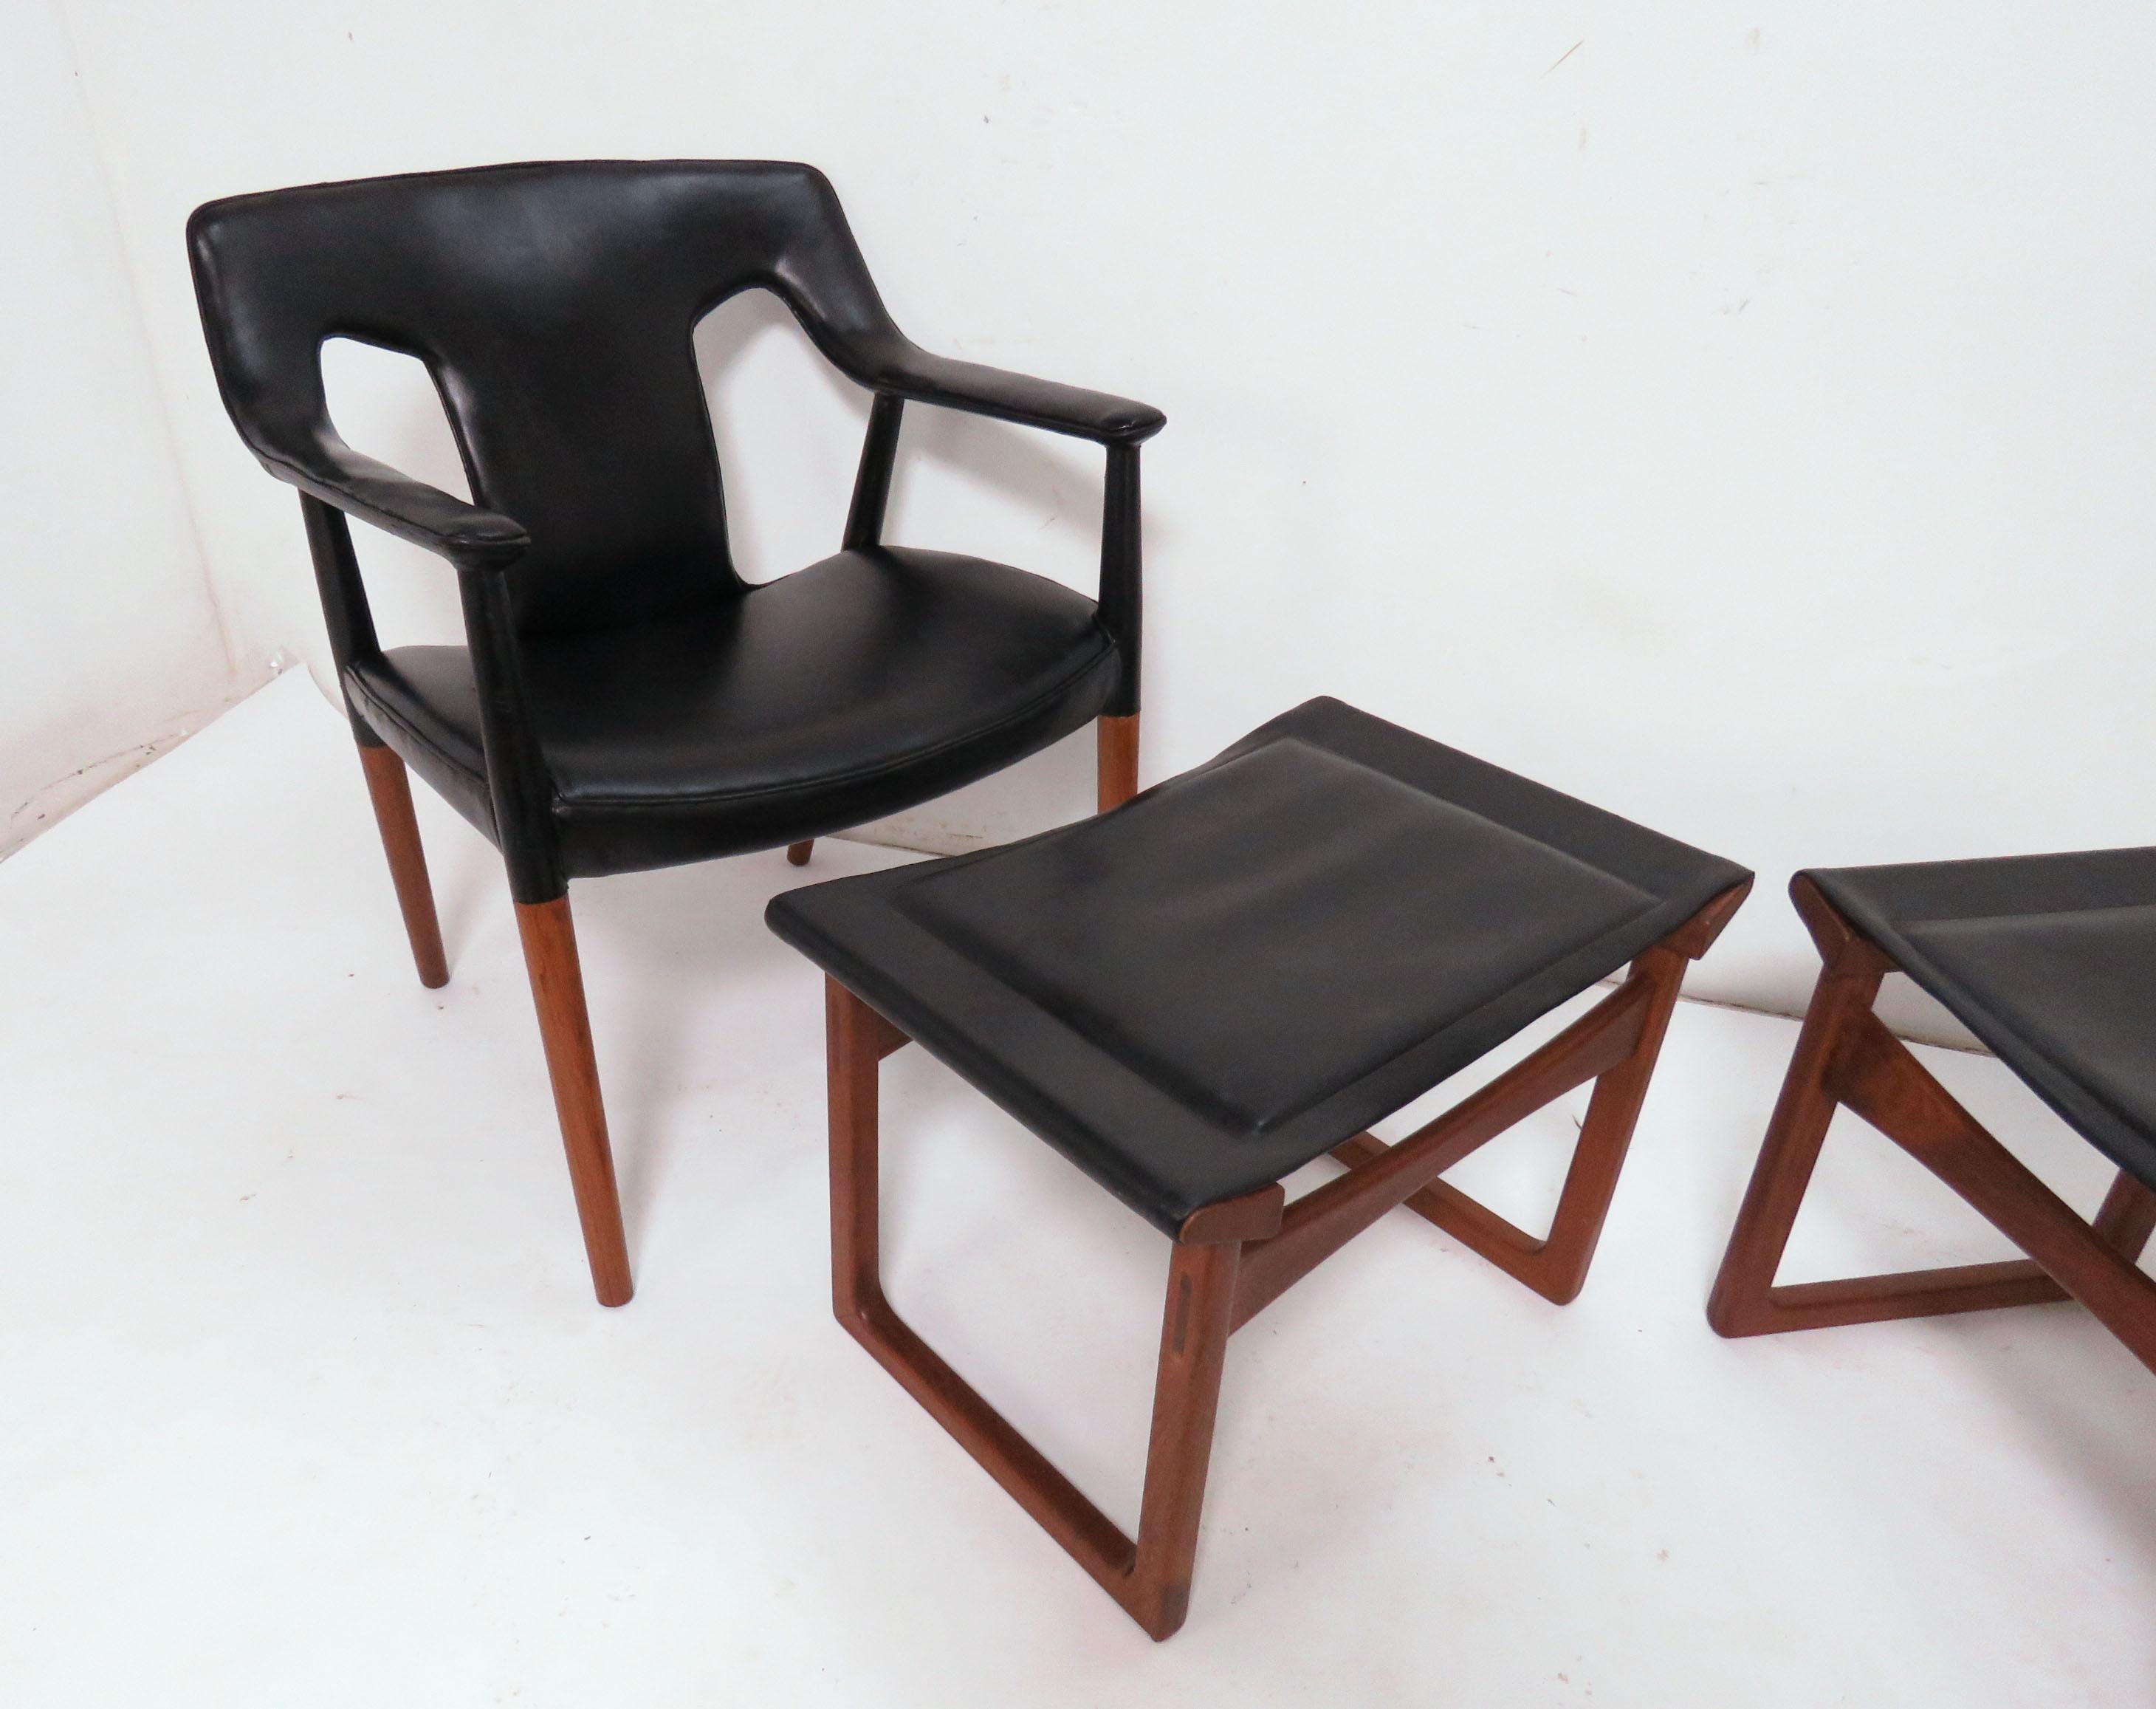 Dänischer Loungesessel und Fußhocker aus Teakholz, ca. Mitte der 1950er Jahre. Entworfen von Ejner Larsen und Aksel Bender Madsen und hergestellt von Ludvig Pontoppidan. Hinweis: Jedes Set aus Stuhl und Hocker wird separat berechnet (d. h. es sind